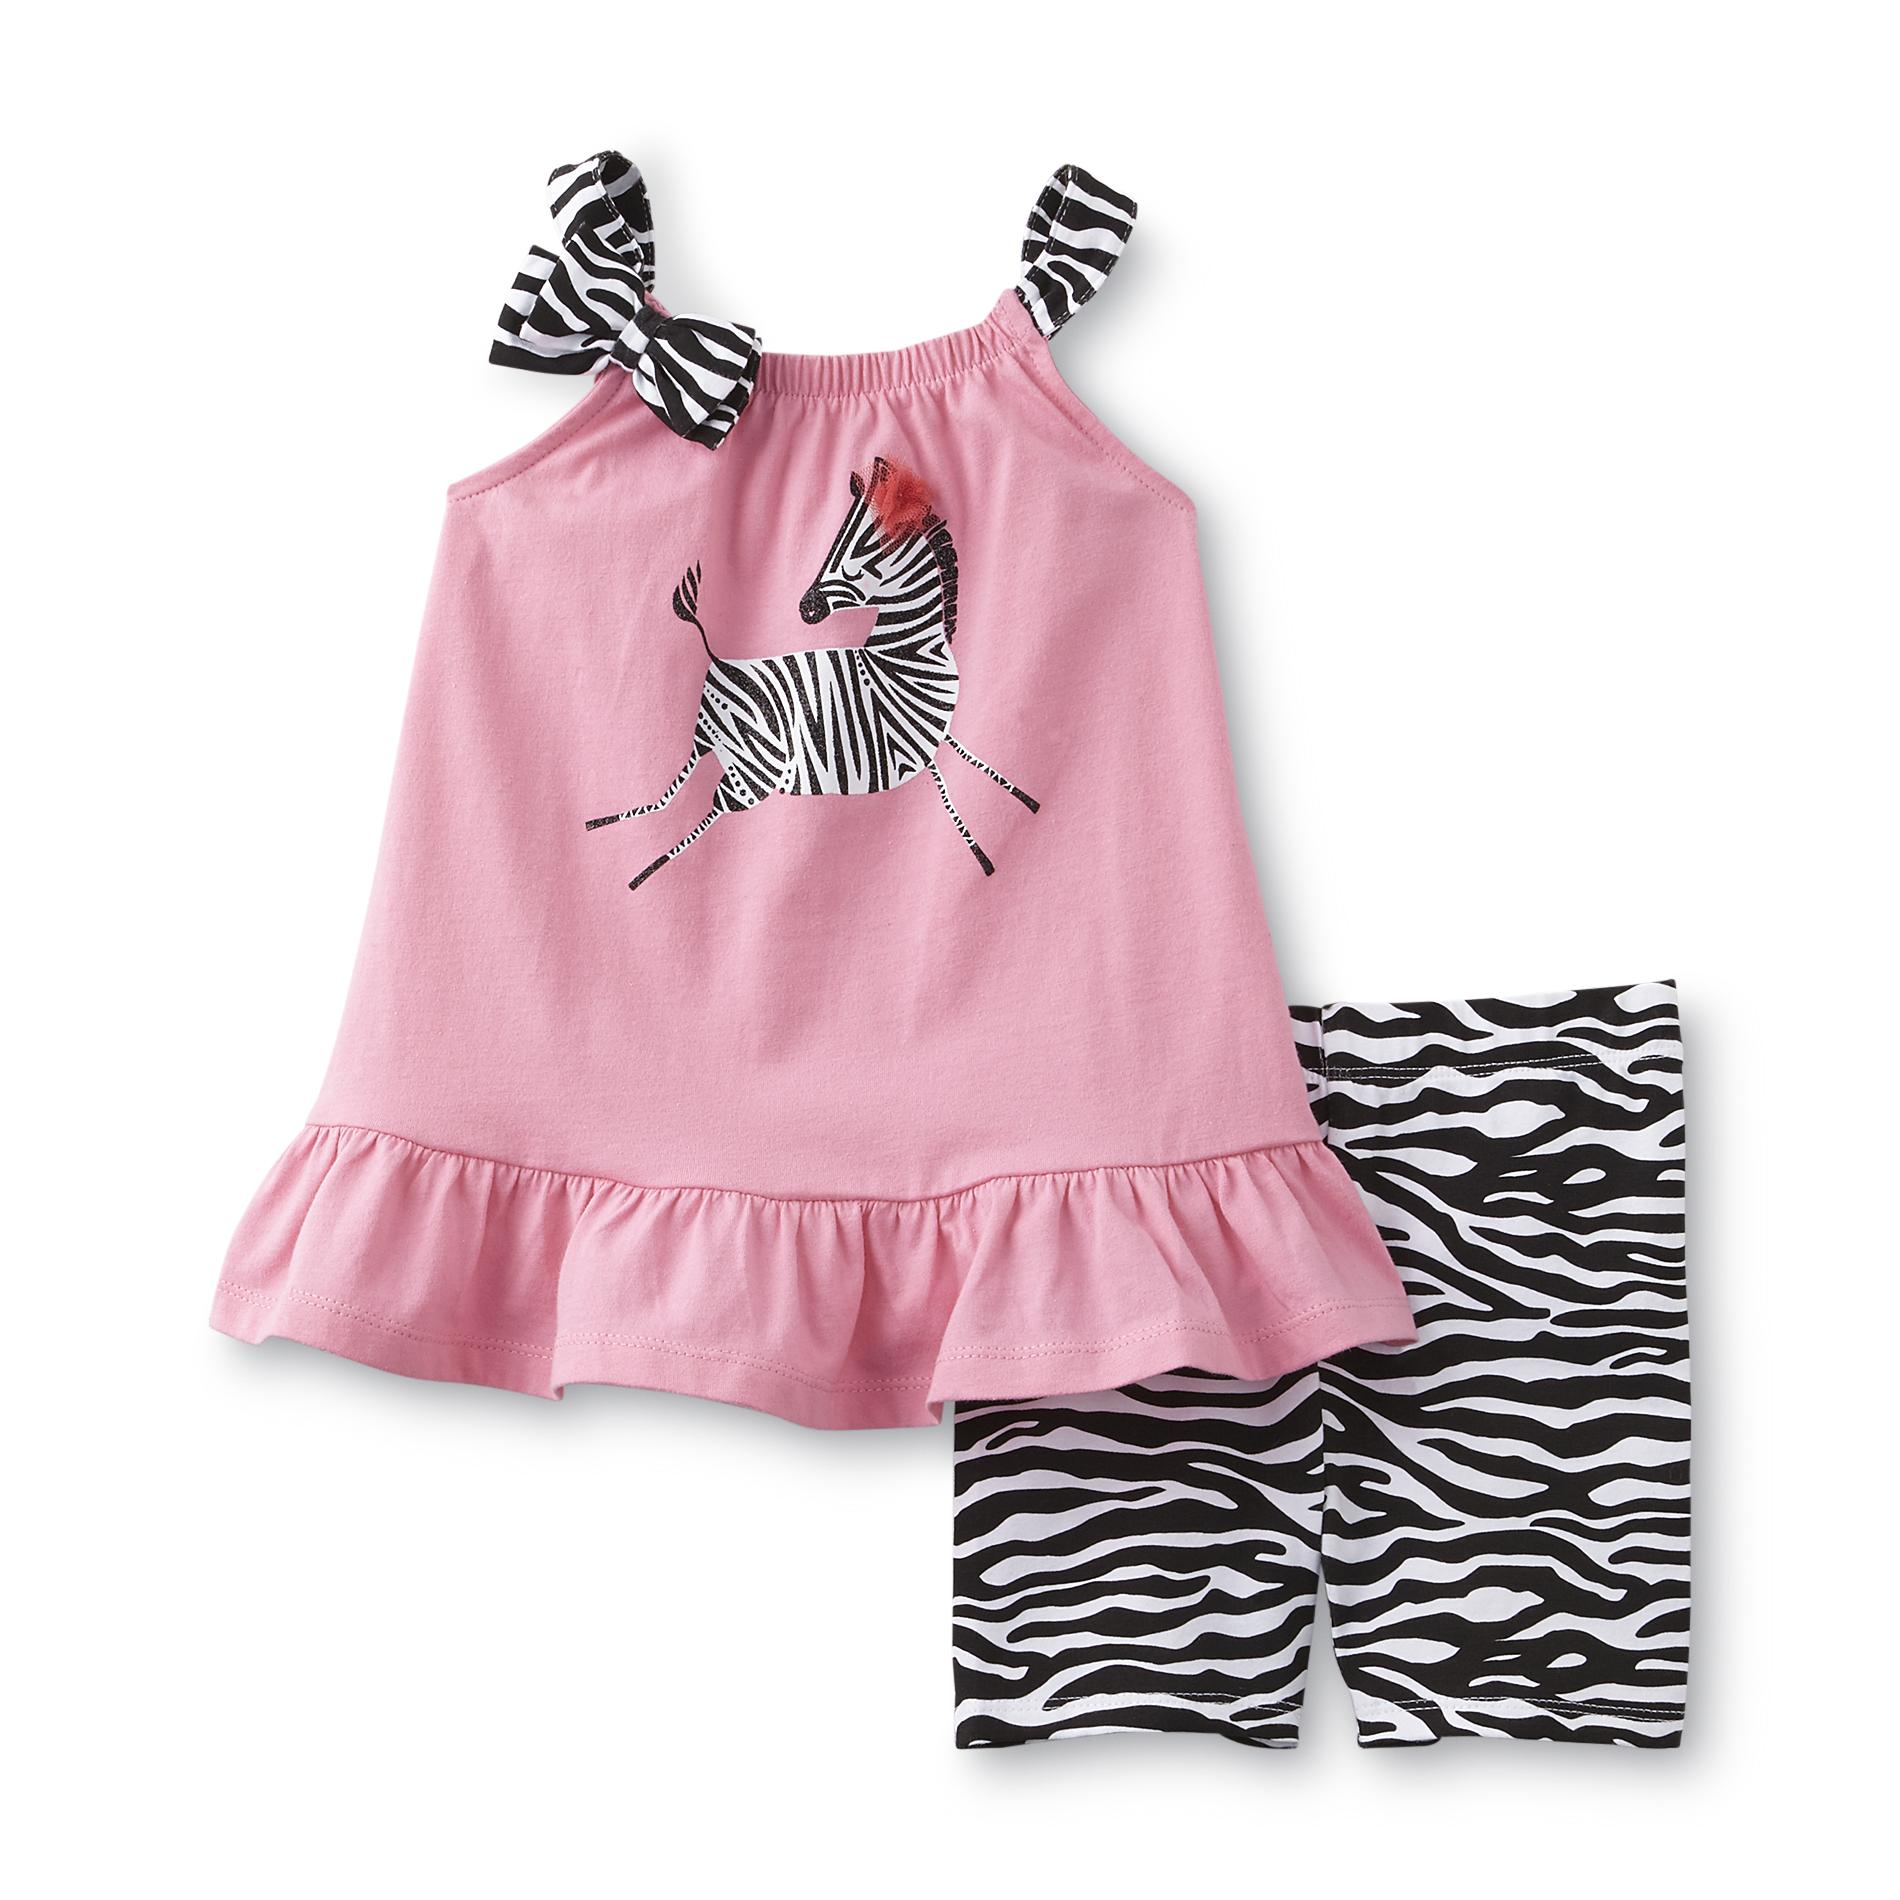 Toughskins Infant & Toddler Girl's Tunic & Shorts - Zebra